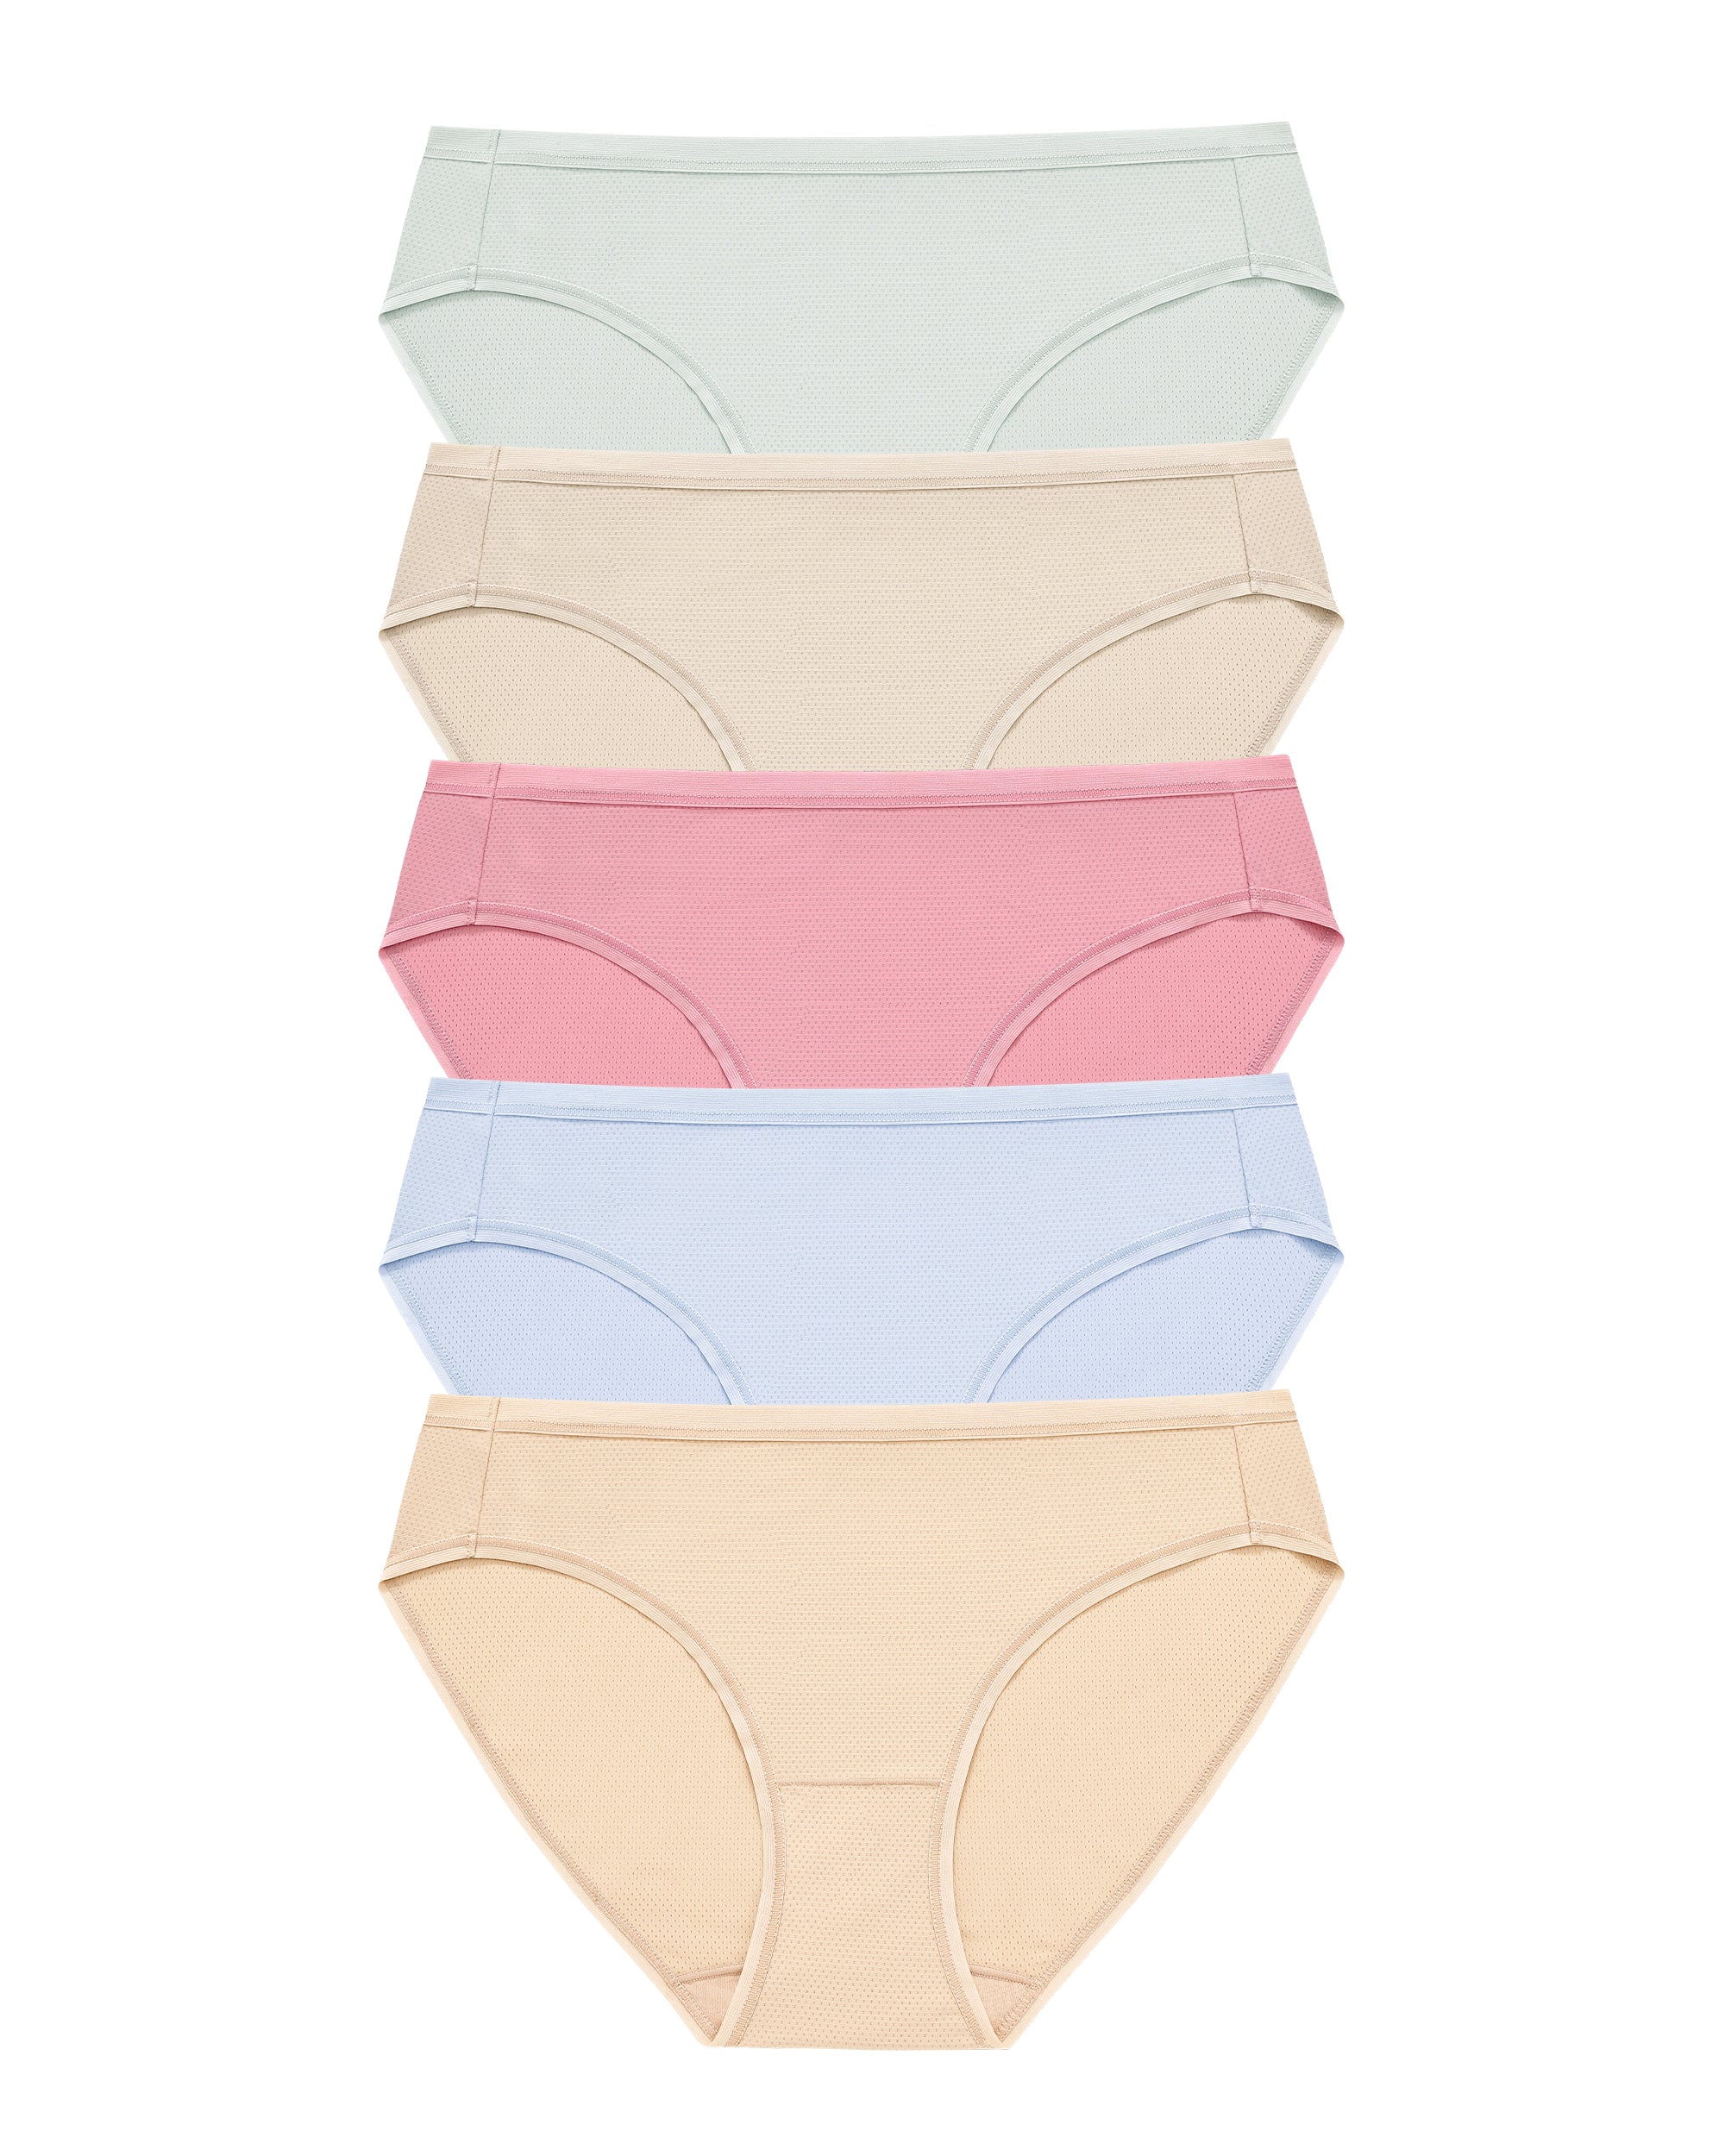 RHYFF Womens Underwear Breathable Mesh Bikini Panties Stay Fresh Ladie –  Rhyff